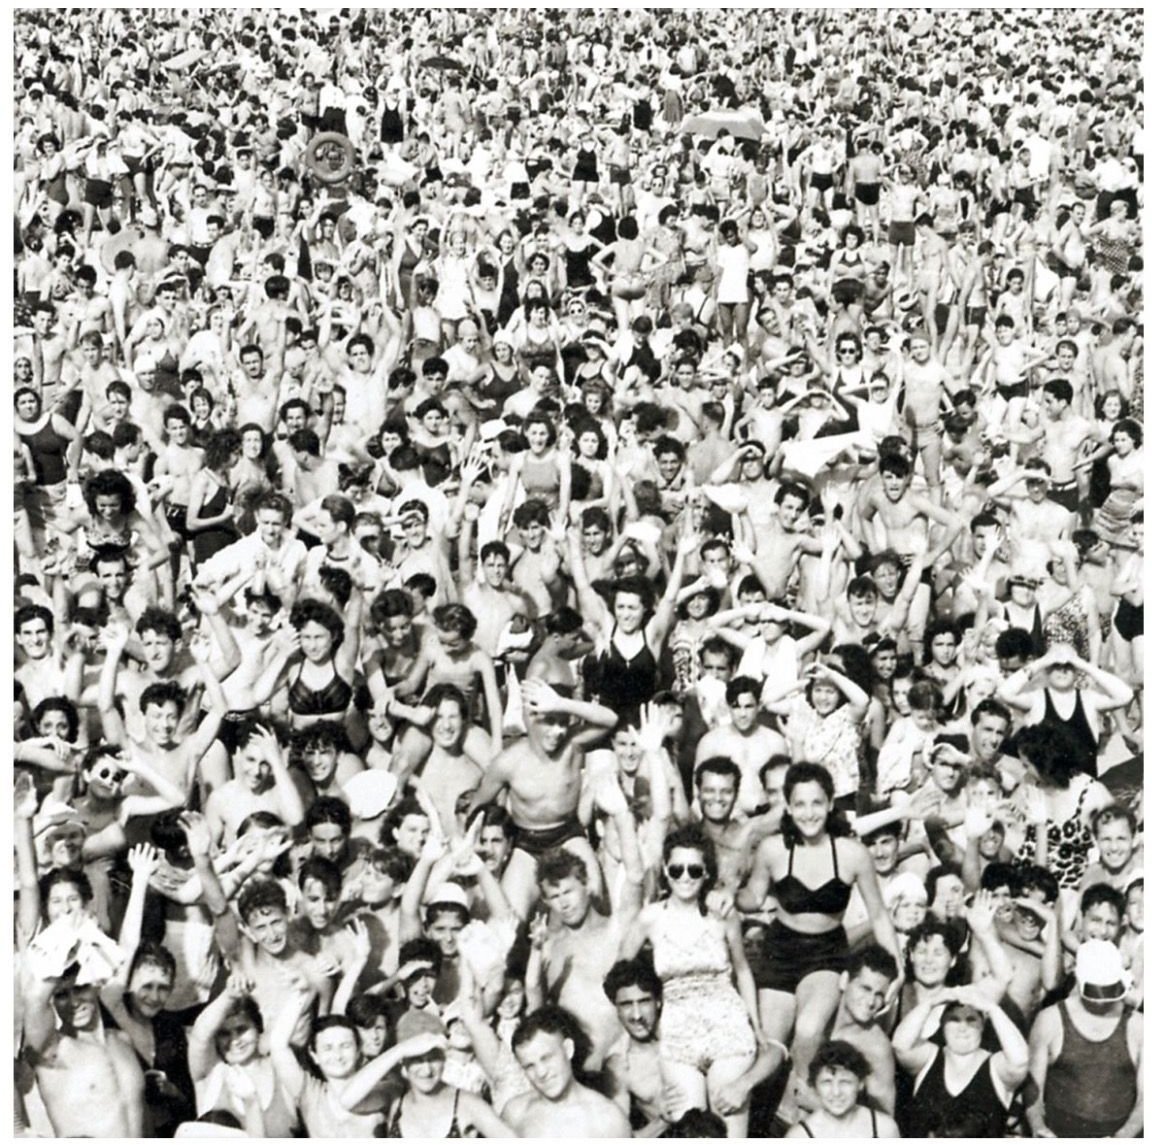 Disque vinyle George Michael - Listen Without Prejudice (Reissue) (LP)